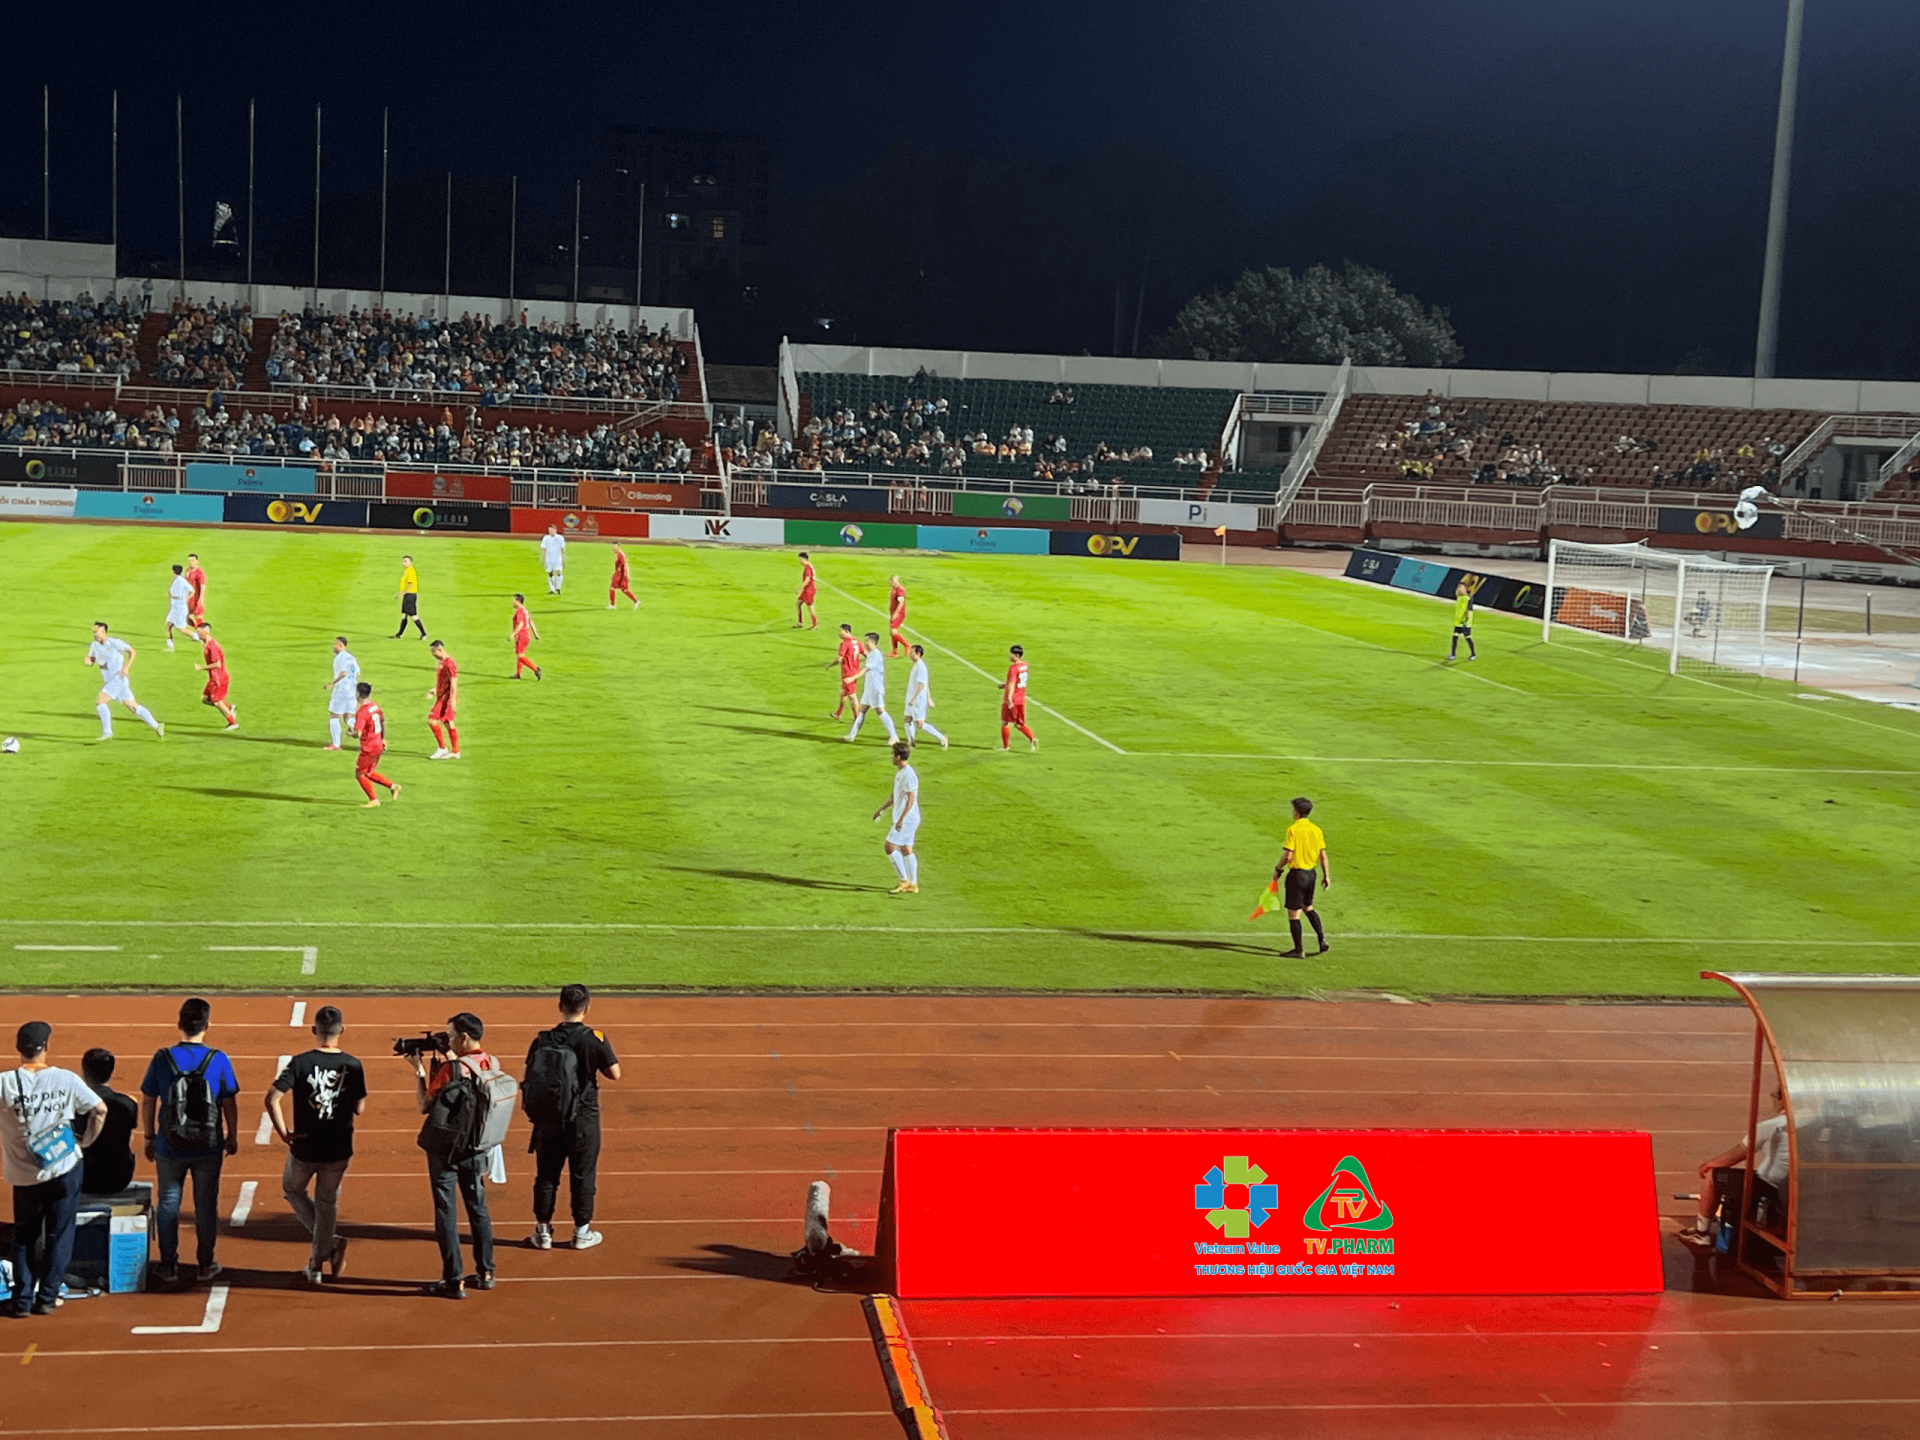 Trận đấu “Hào quang trở lại” với sự góp mặt của các cầu thủ vàng bóng đá Việt qua các thời kỳ